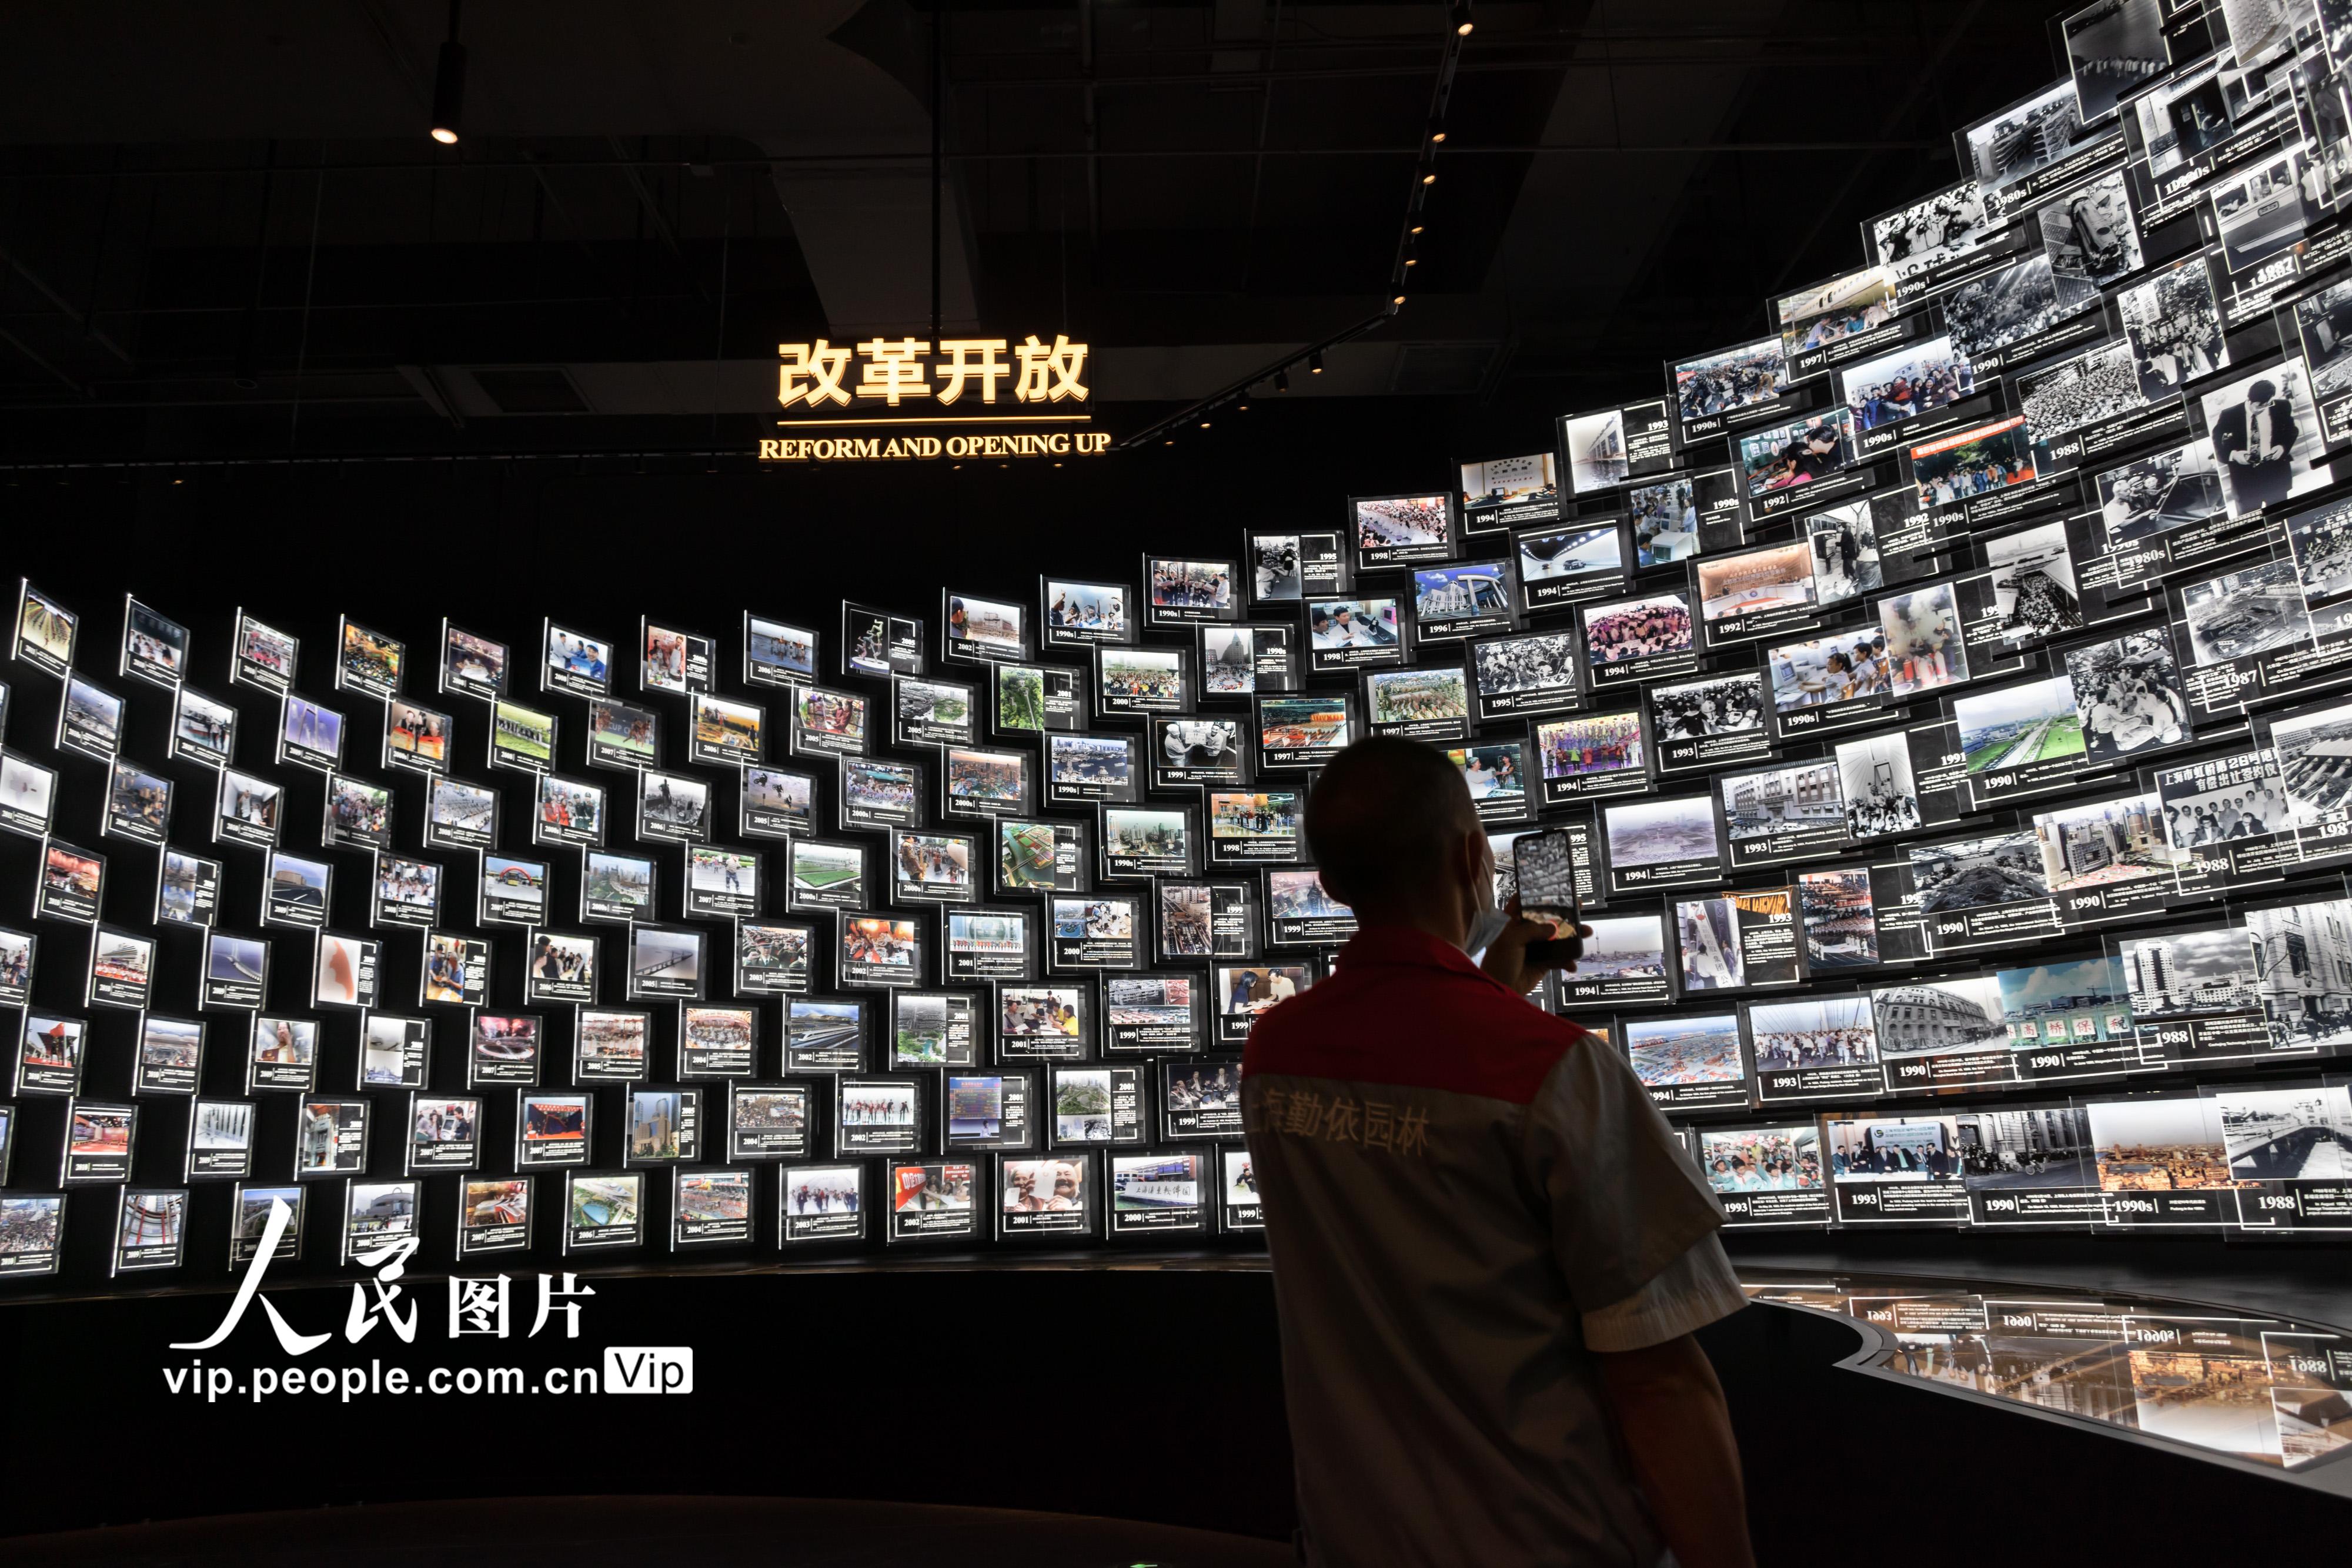 上海市檔案館新館投入運行 “城市記憶 時光珍藏”主題展向公眾開放